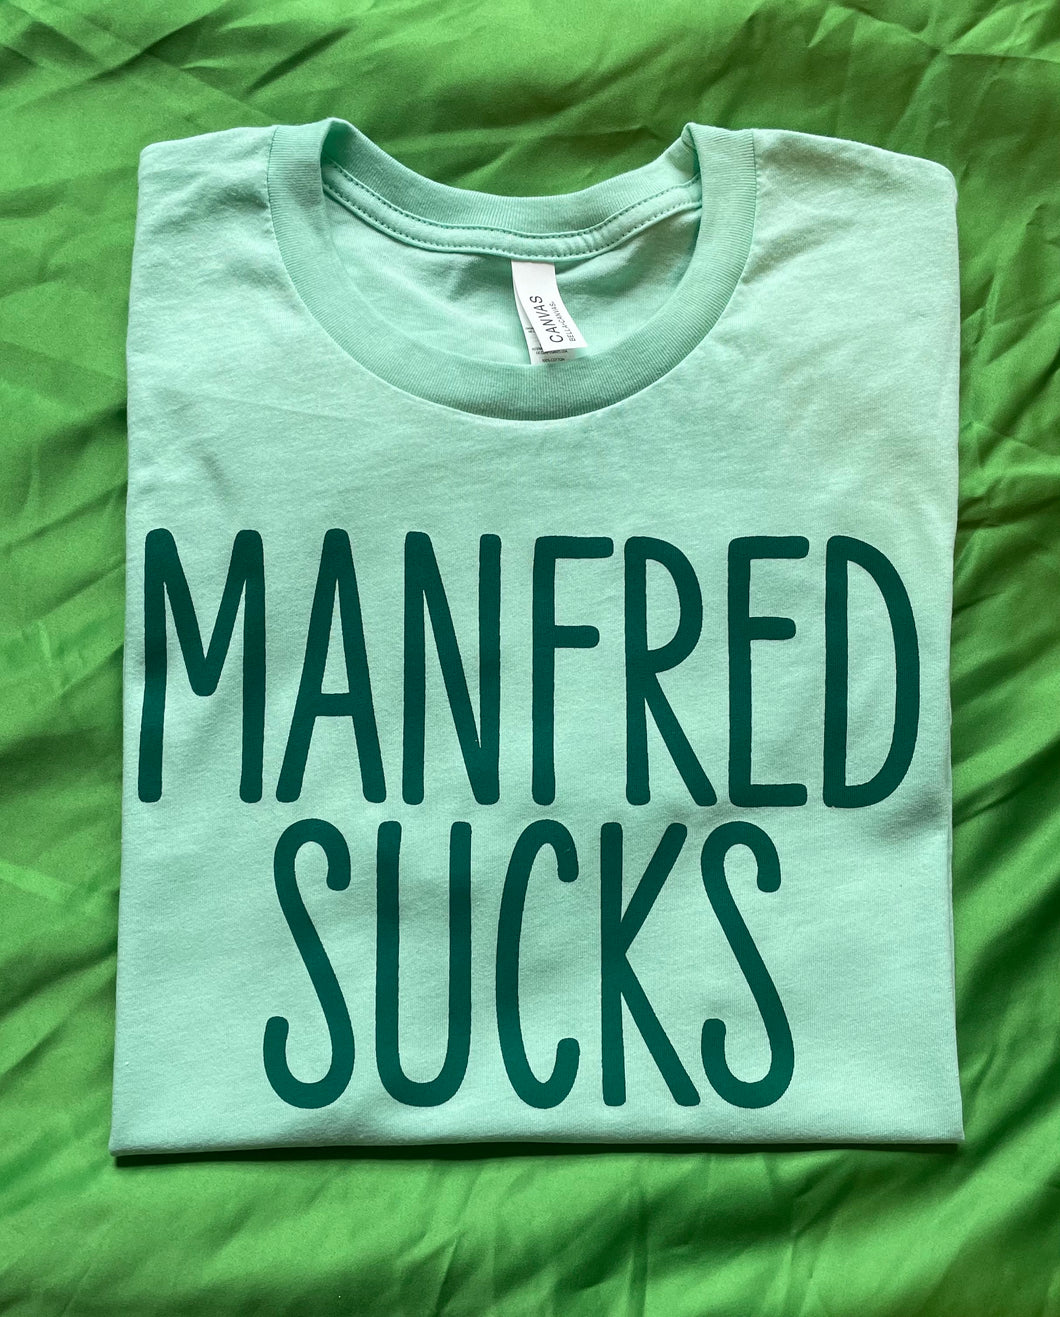 Manfred Sucks